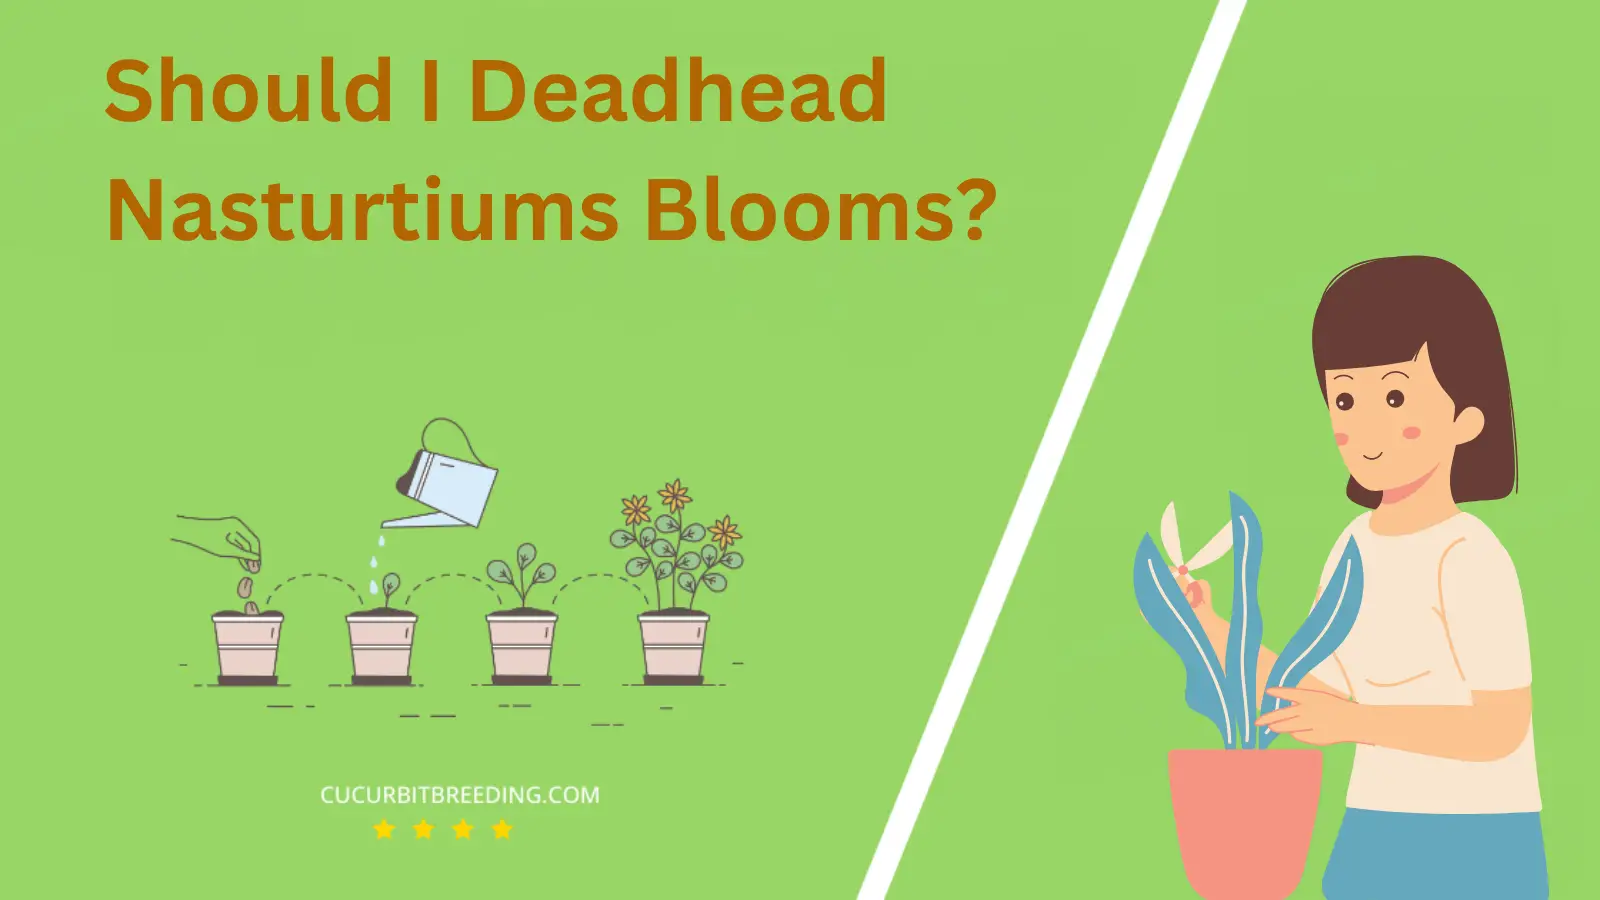 Should I Deadhead Nasturtiums Blooms?